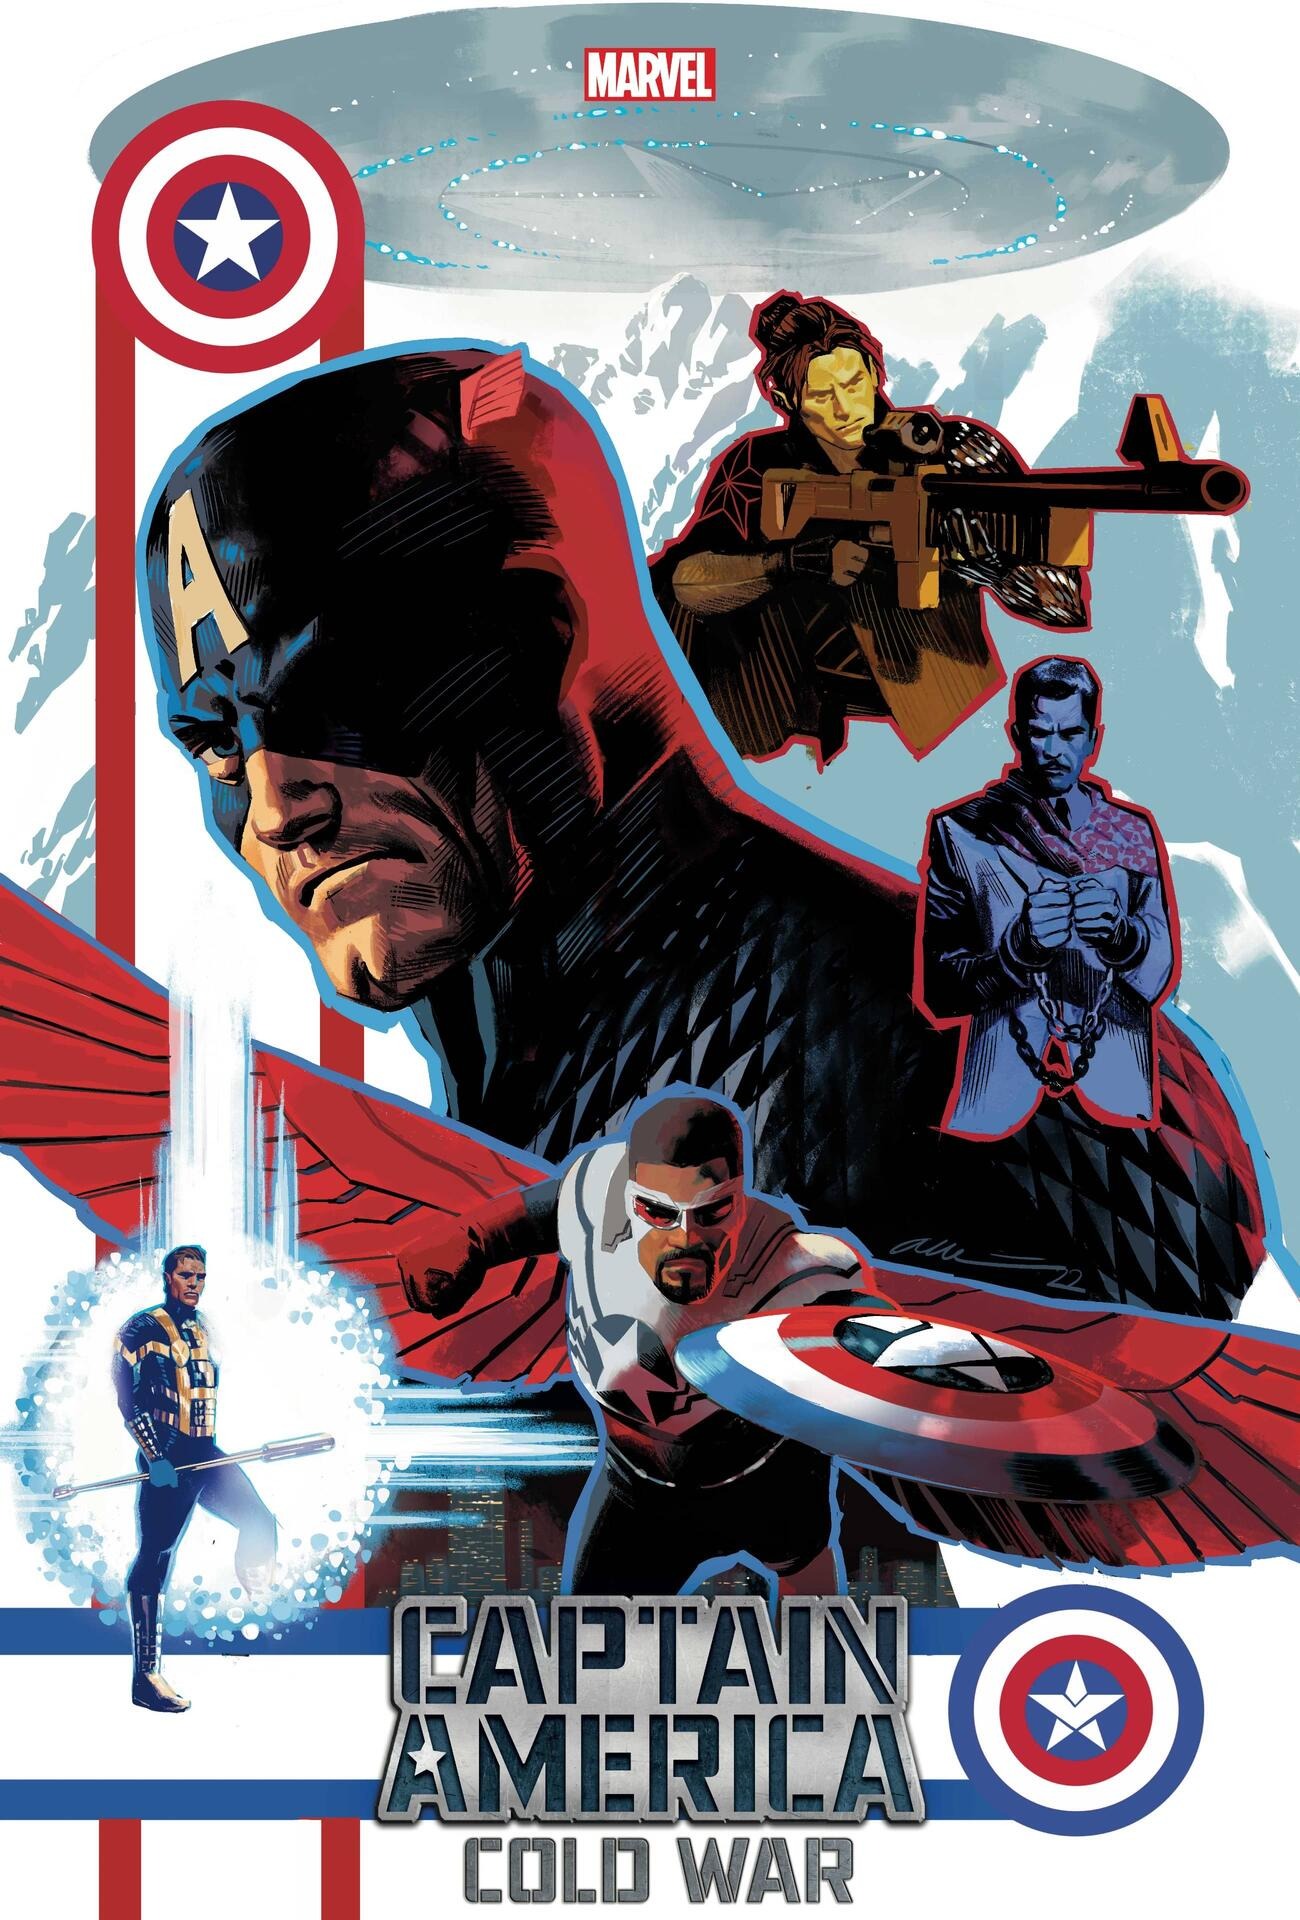 GUERRA FRIA! Marvel revela mais detalhes da nova saga dos Capitães América